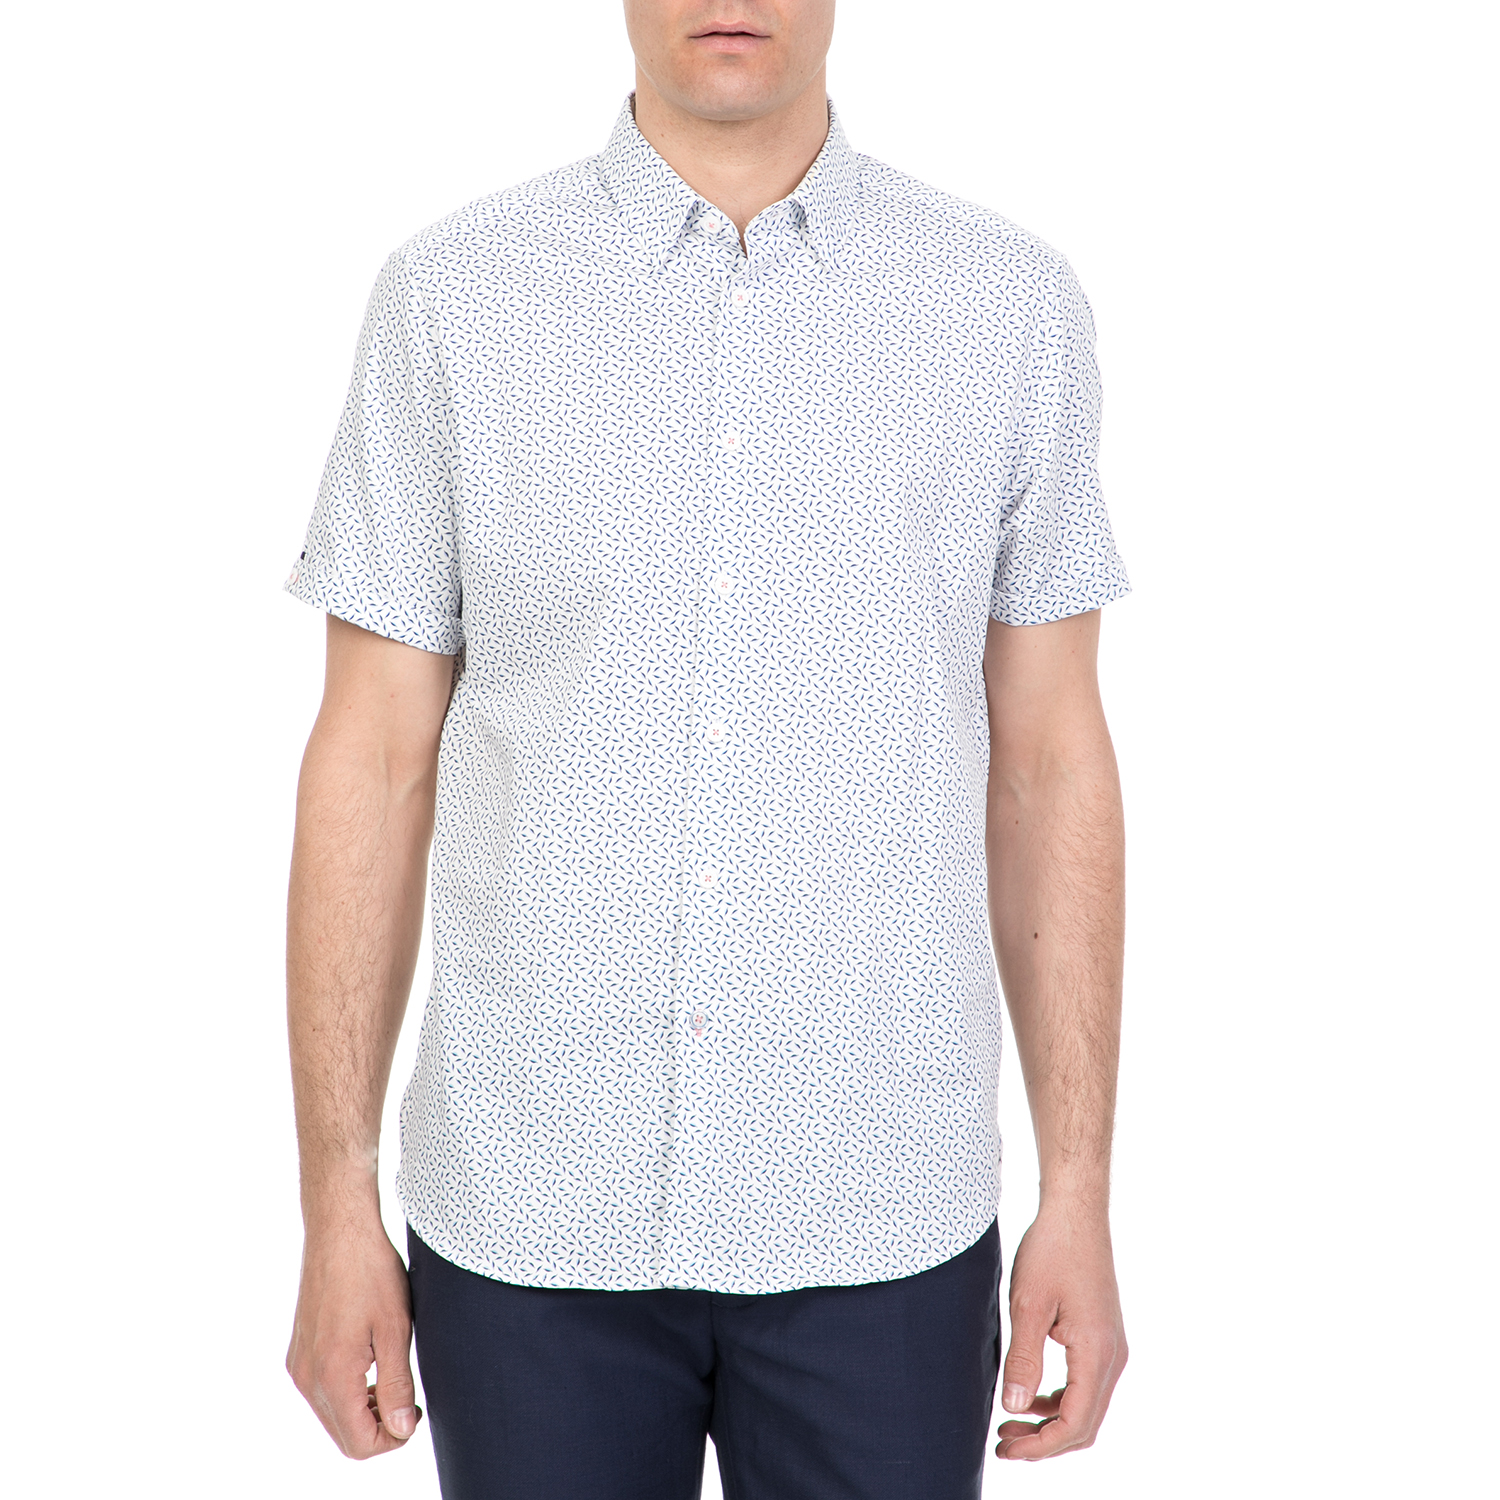 Ανδρικά/Ρούχα/Πουκάμισα/Κοντομάνικα-Αμάνικα TED BAKER - Ανδρικό κοντομάνικο πουκάμισο NARNAR TED BAKER λευκό-μπλε